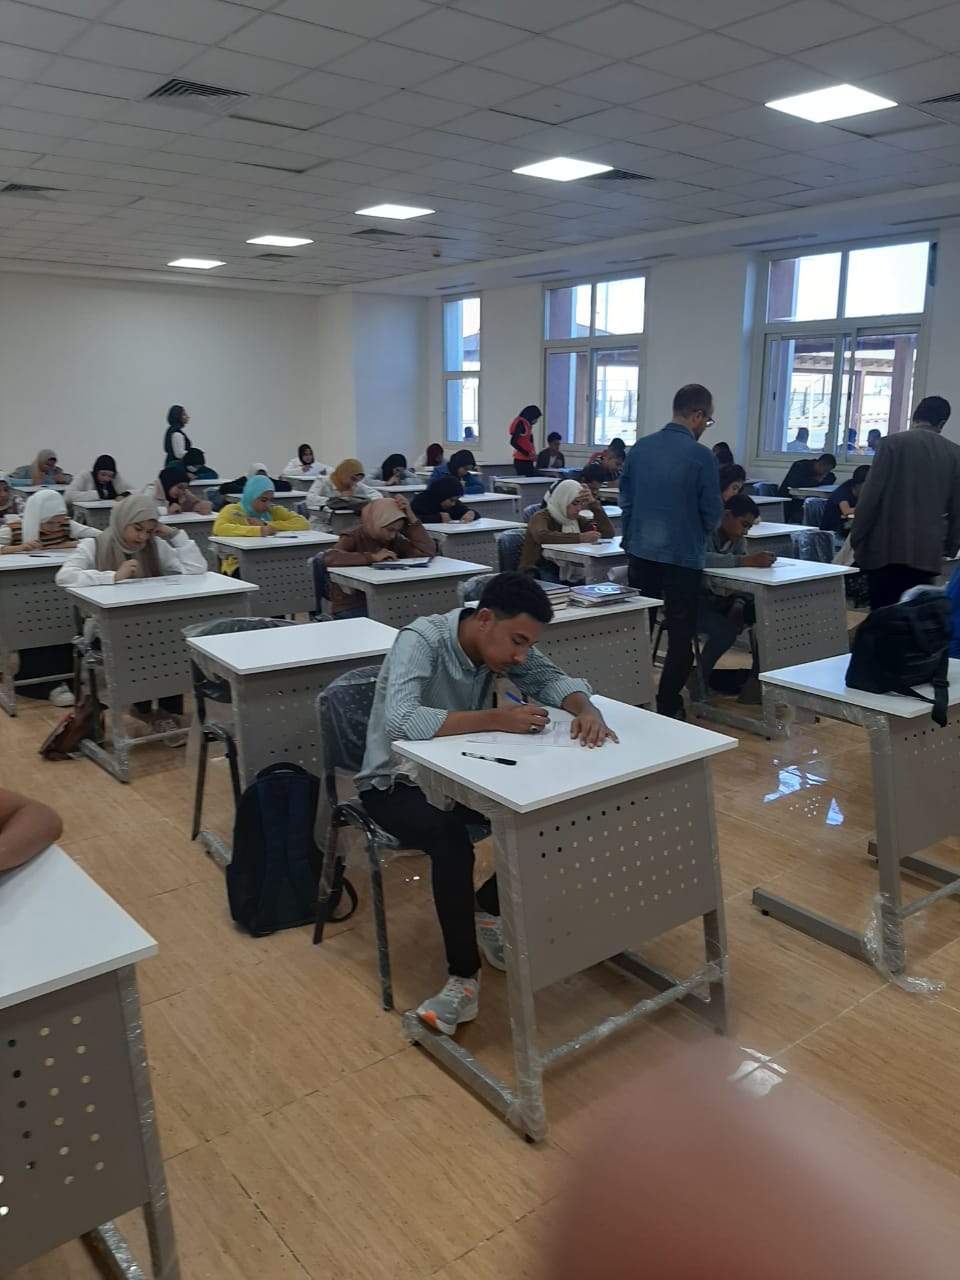 جامعة طيبة التكنولوجية بالأقصر تواصل عقد امتحانات منتصف الفصل الدراسي الأول "الميد تيرم"